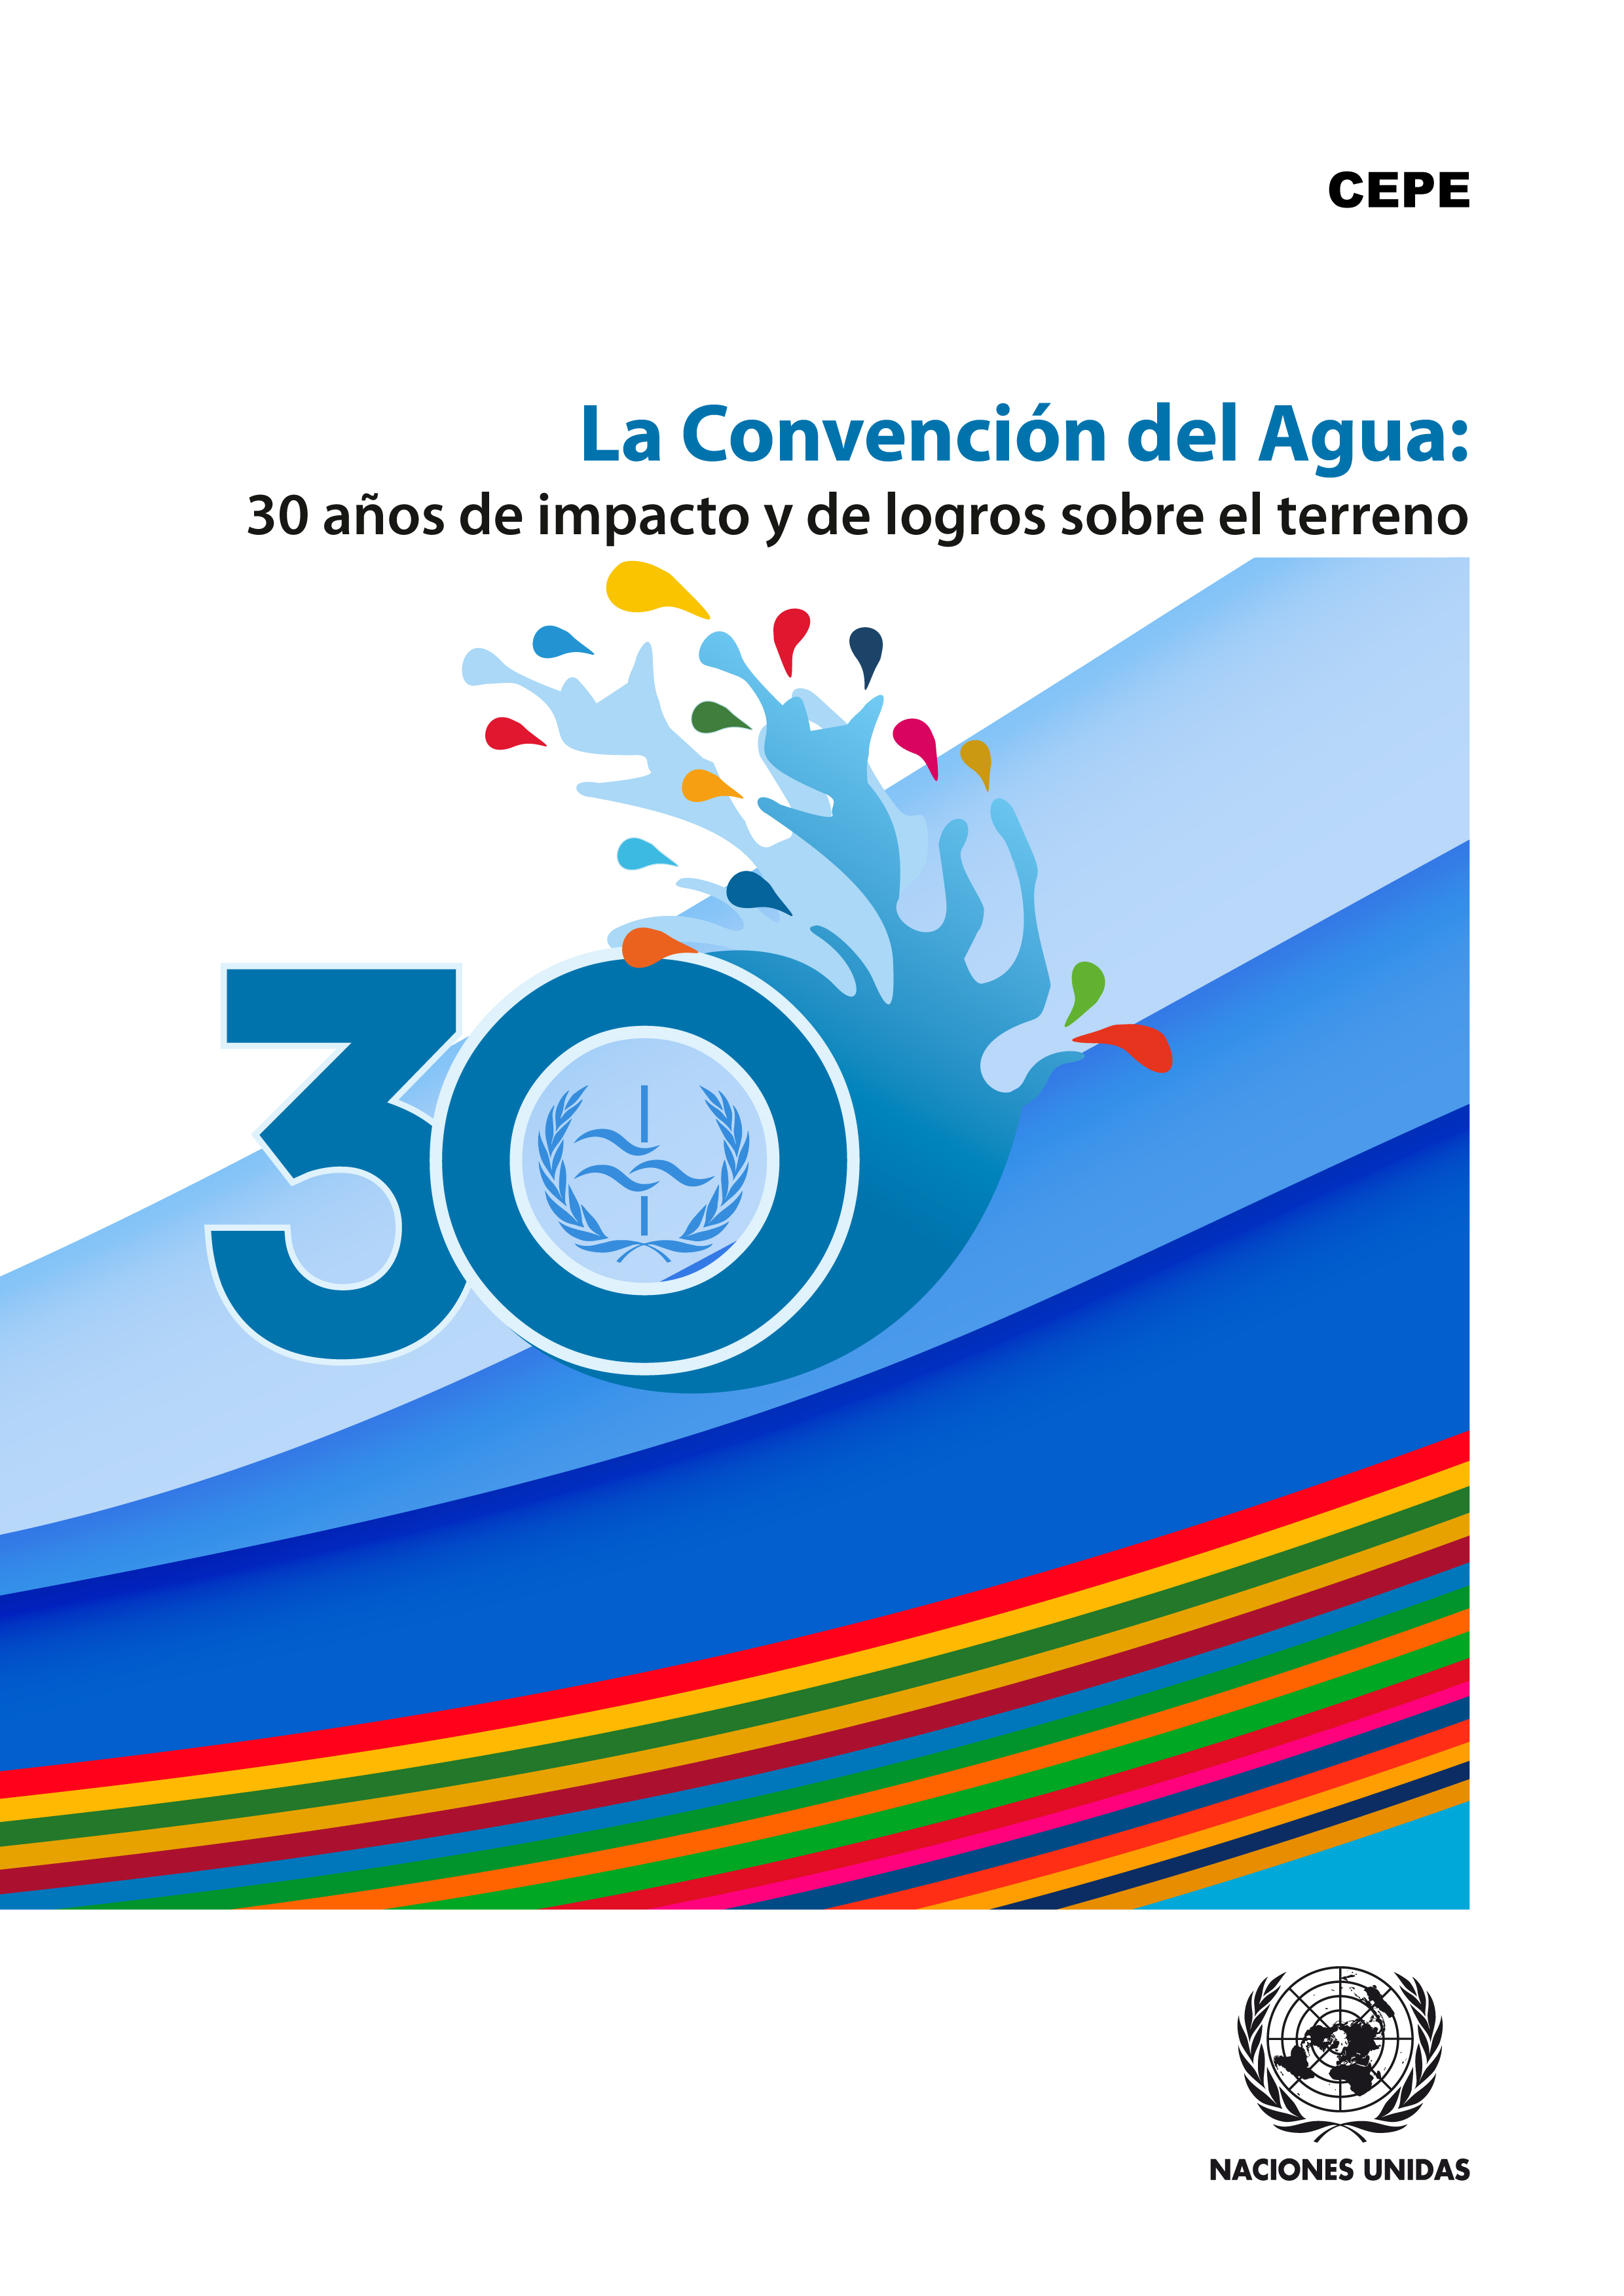 image of La Convención del Agua custodia la protección de nuestro medio ambiente y los ecosistemas